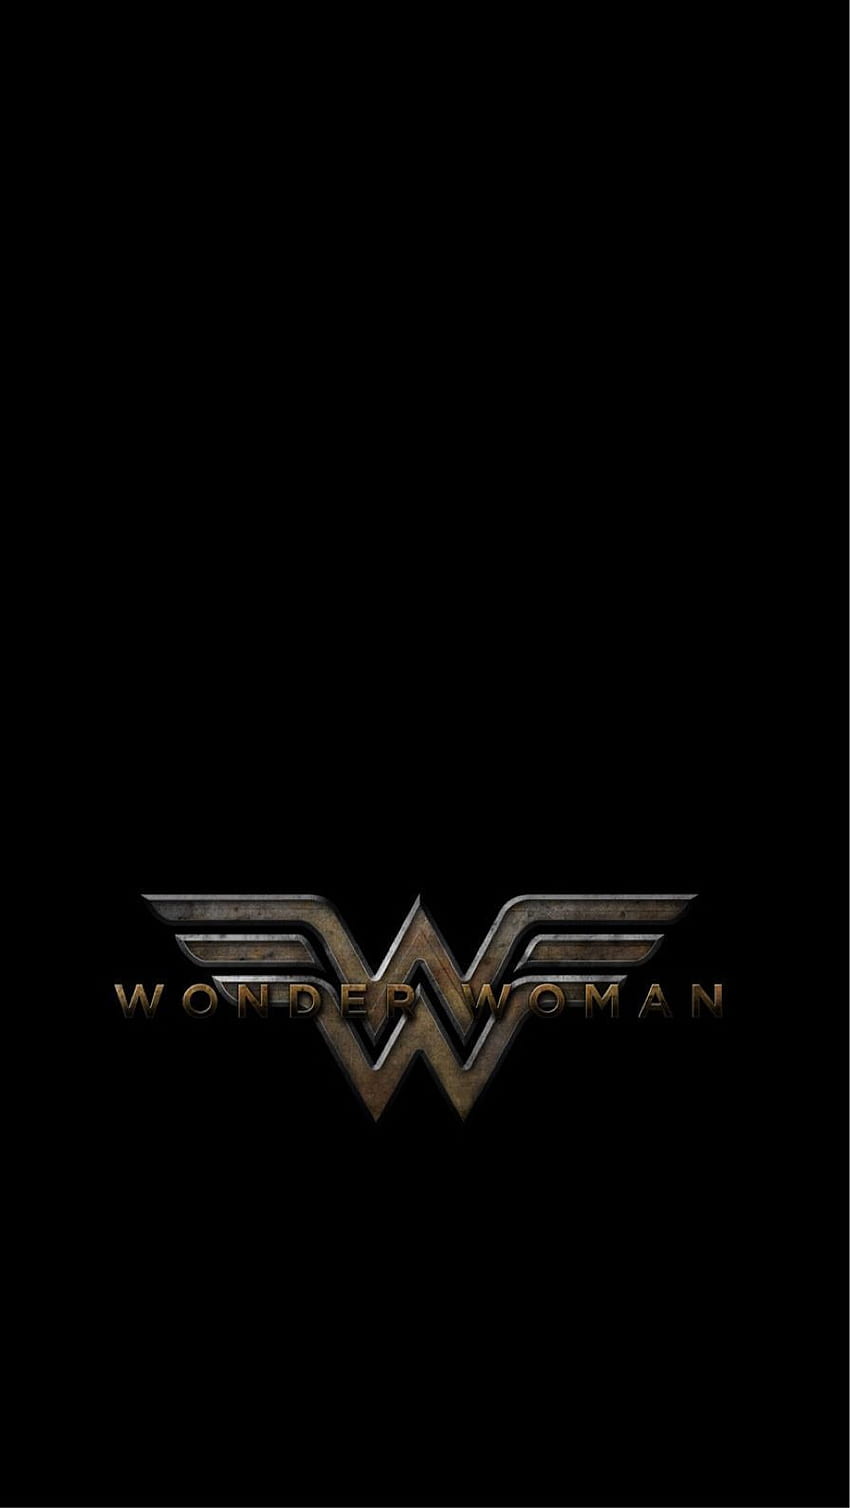 Wonder Woman digital art  Wonder woman art Wonder woman logo Wonder woman  comic